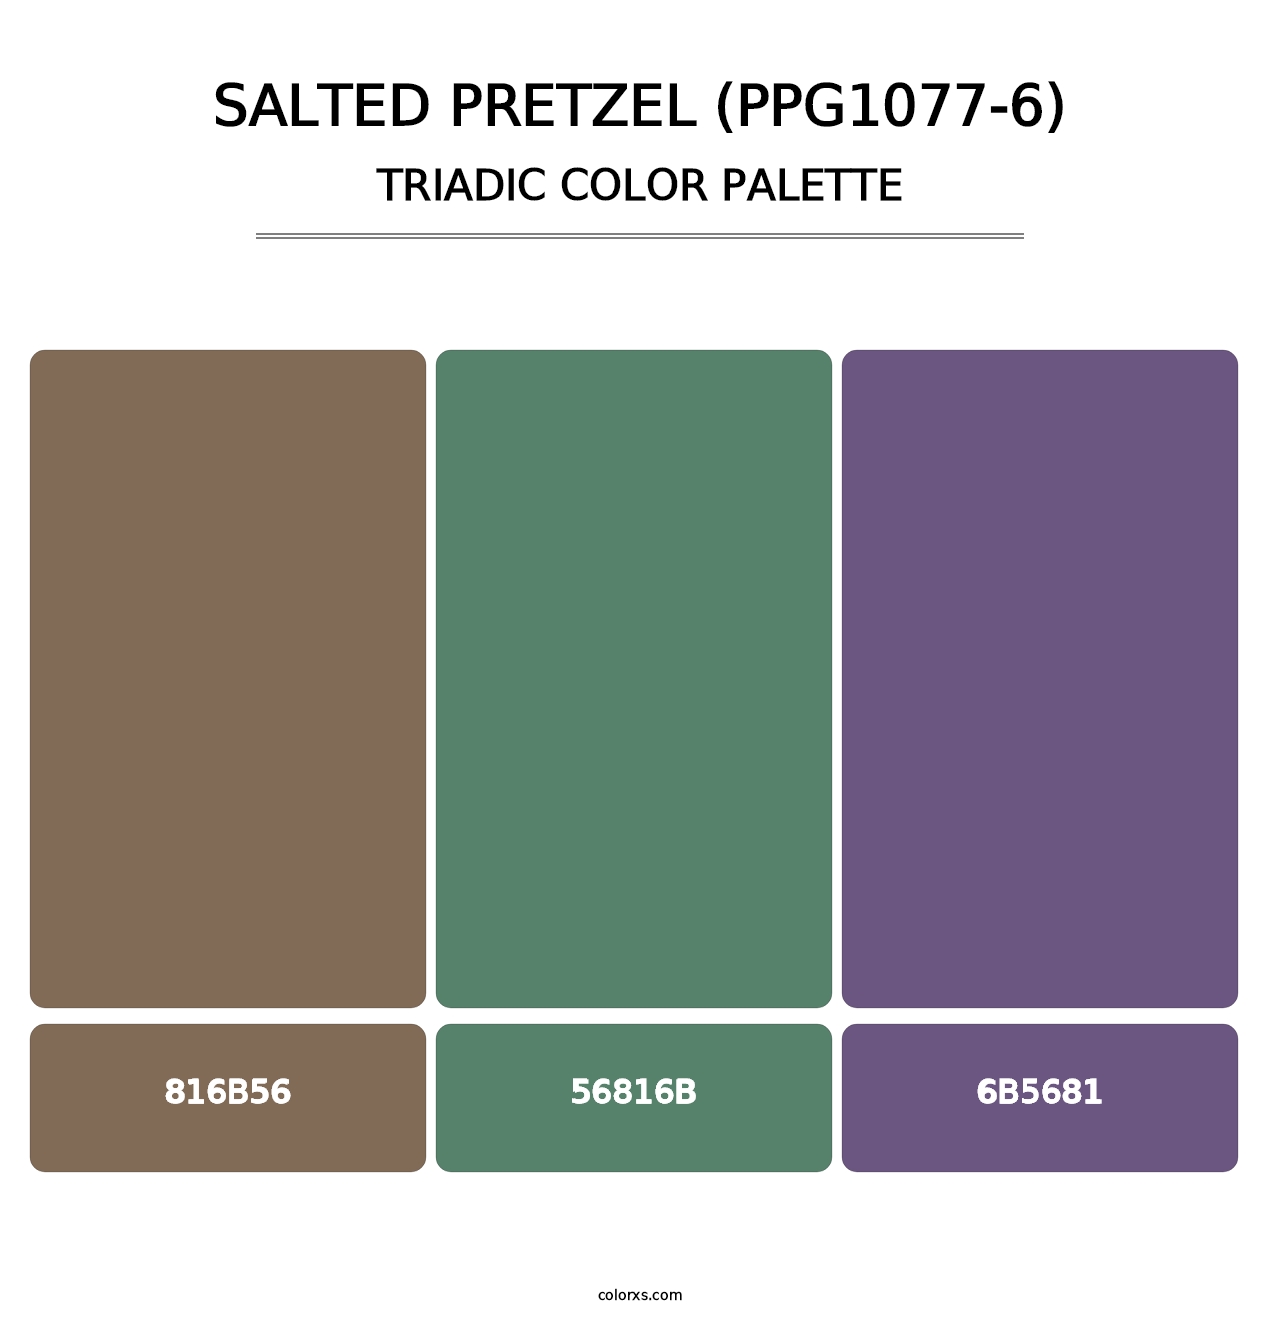 Salted Pretzel (PPG1077-6) - Triadic Color Palette